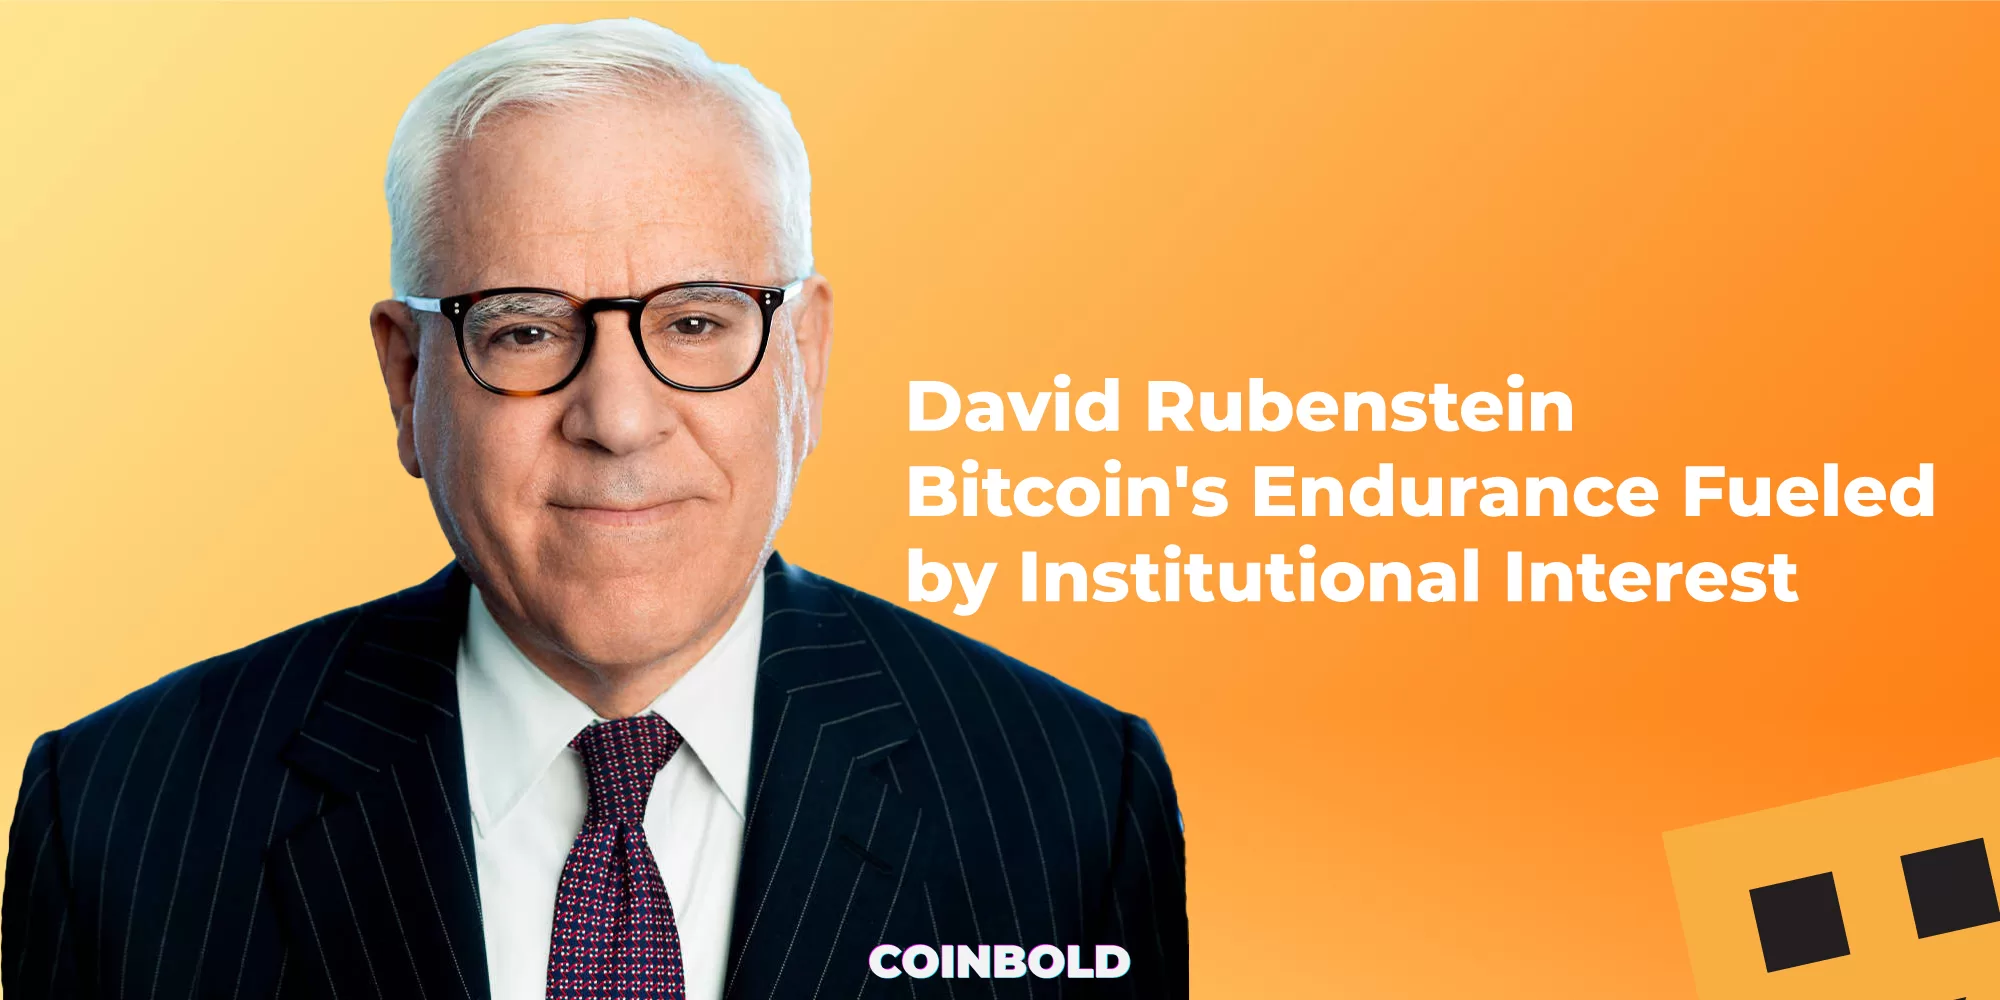 David Rubenstein Bitcoin's Endurance Fueled by Institutional Interest